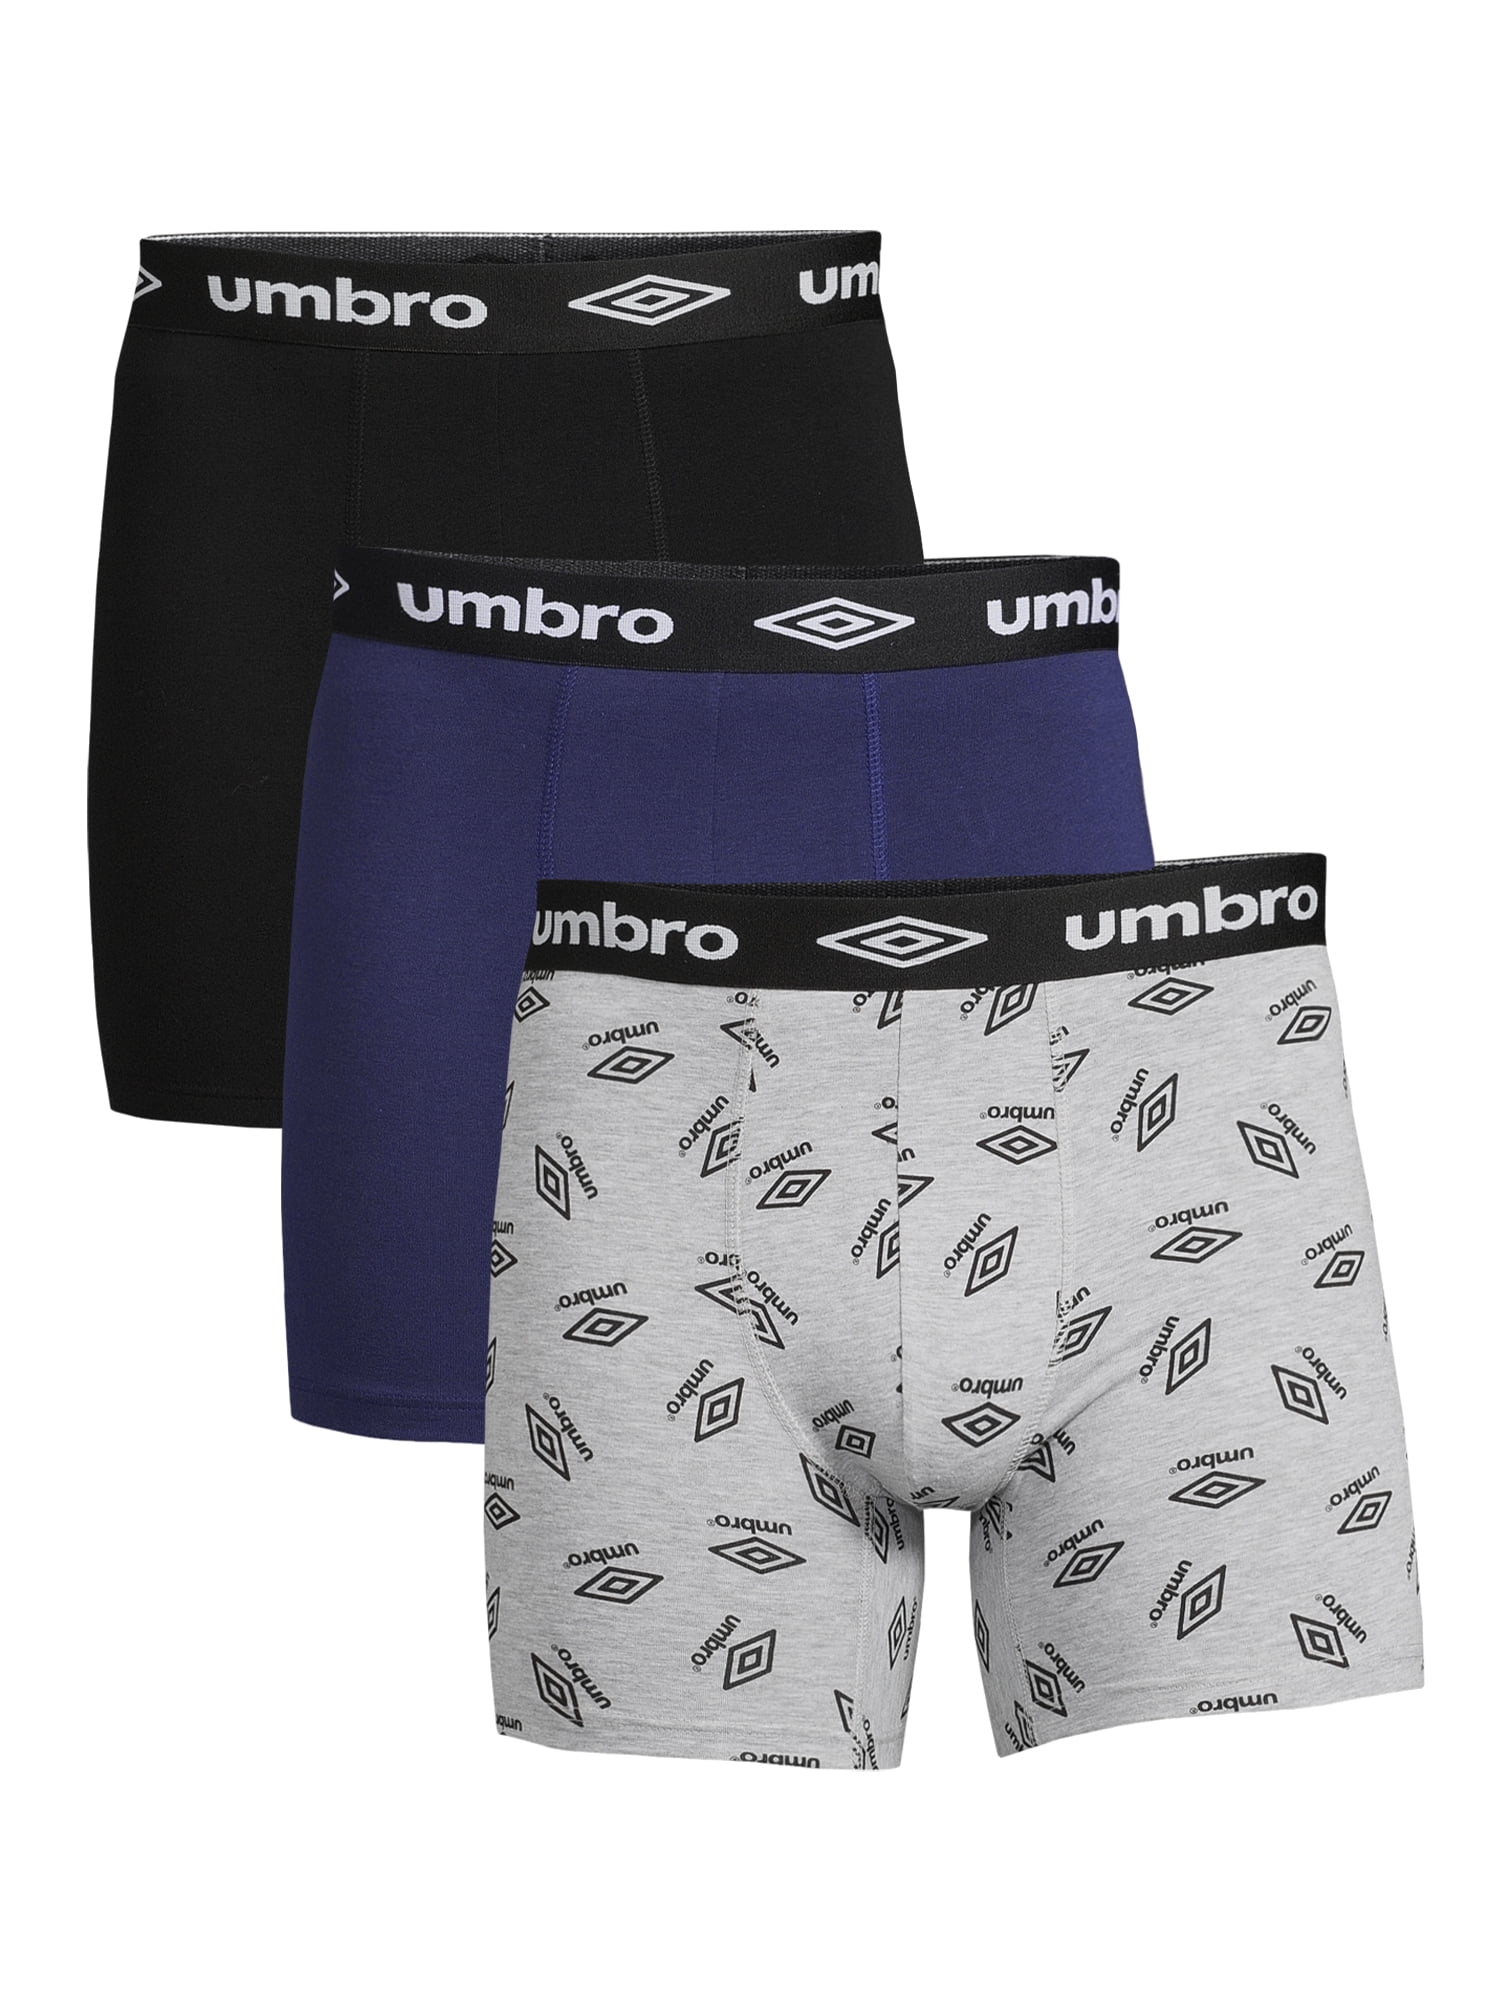 lassen medeleerling Scharnier Umbro Men's Cotton Stretch Boxer Briefs, 3-Pack - Walmart.com